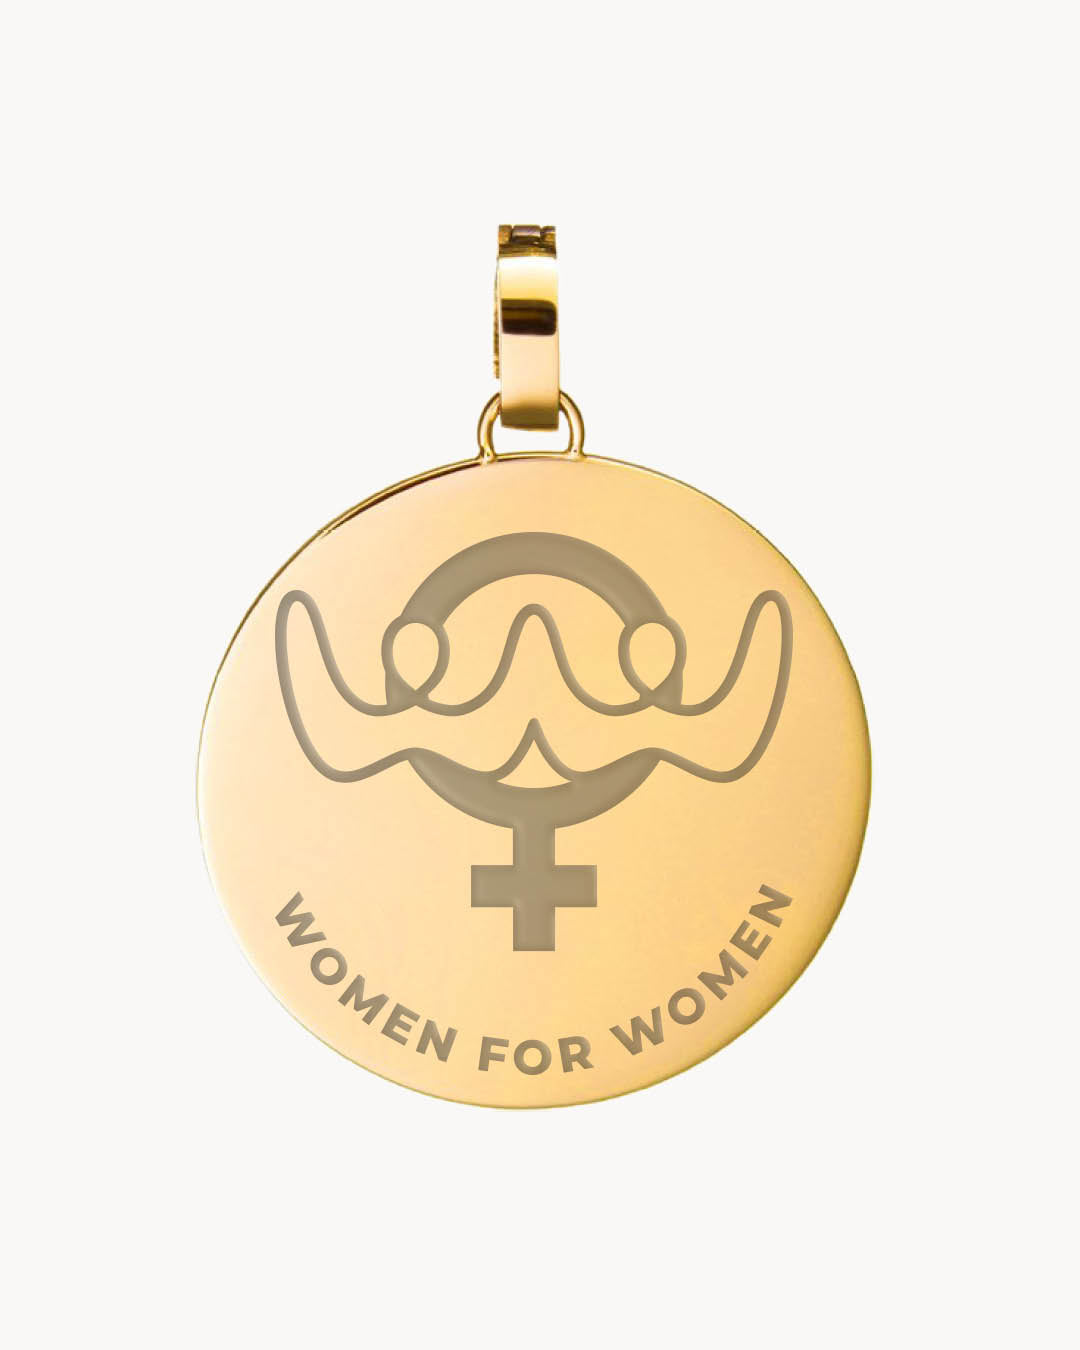 Women for Women Pendant, Gold